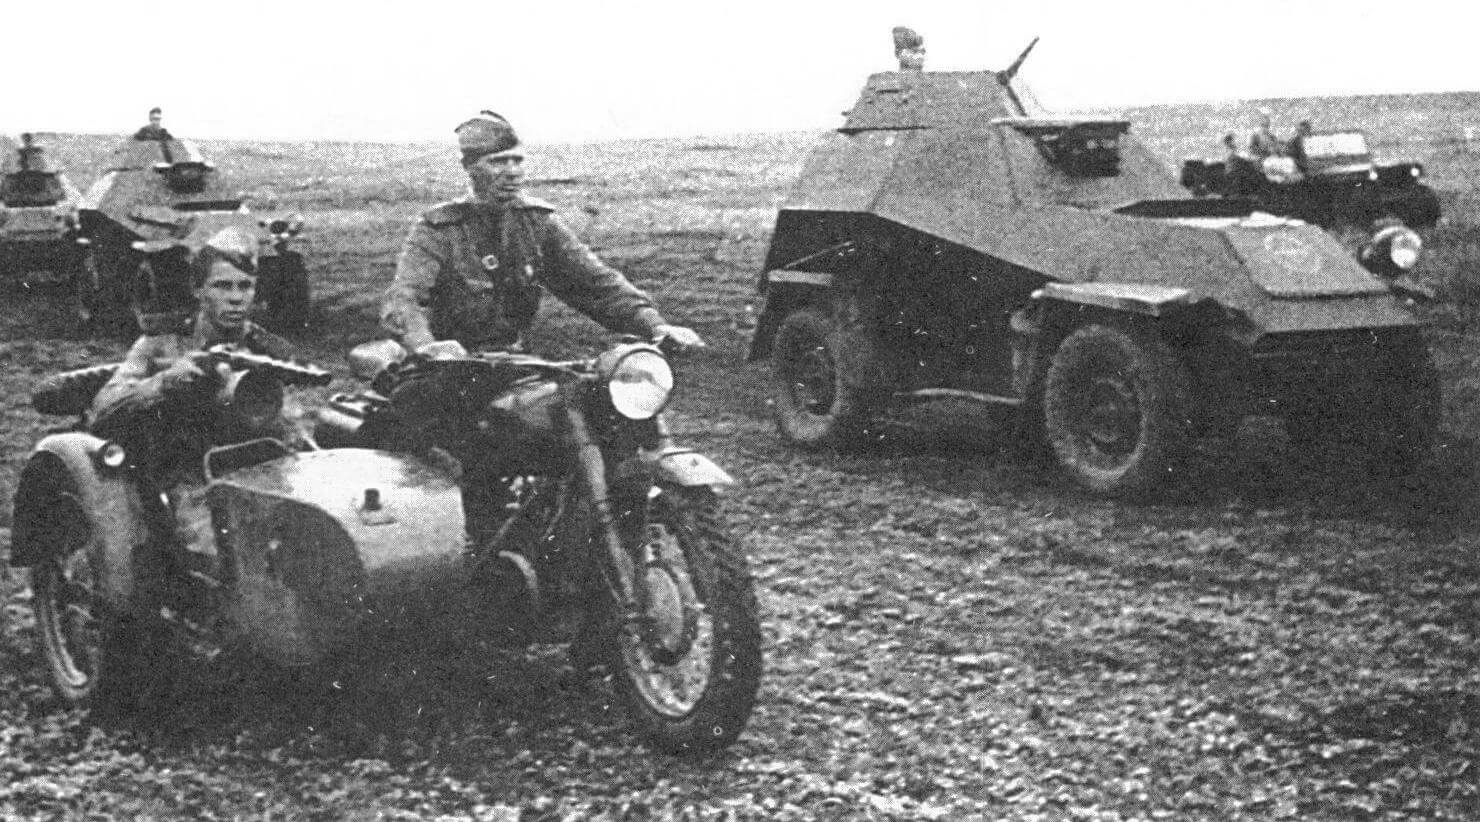 Мотоциклетное подразделение, усиленное взводом бронеавтомобилей БА-64, в передовом дозоре. Южный фронт, 1943 год